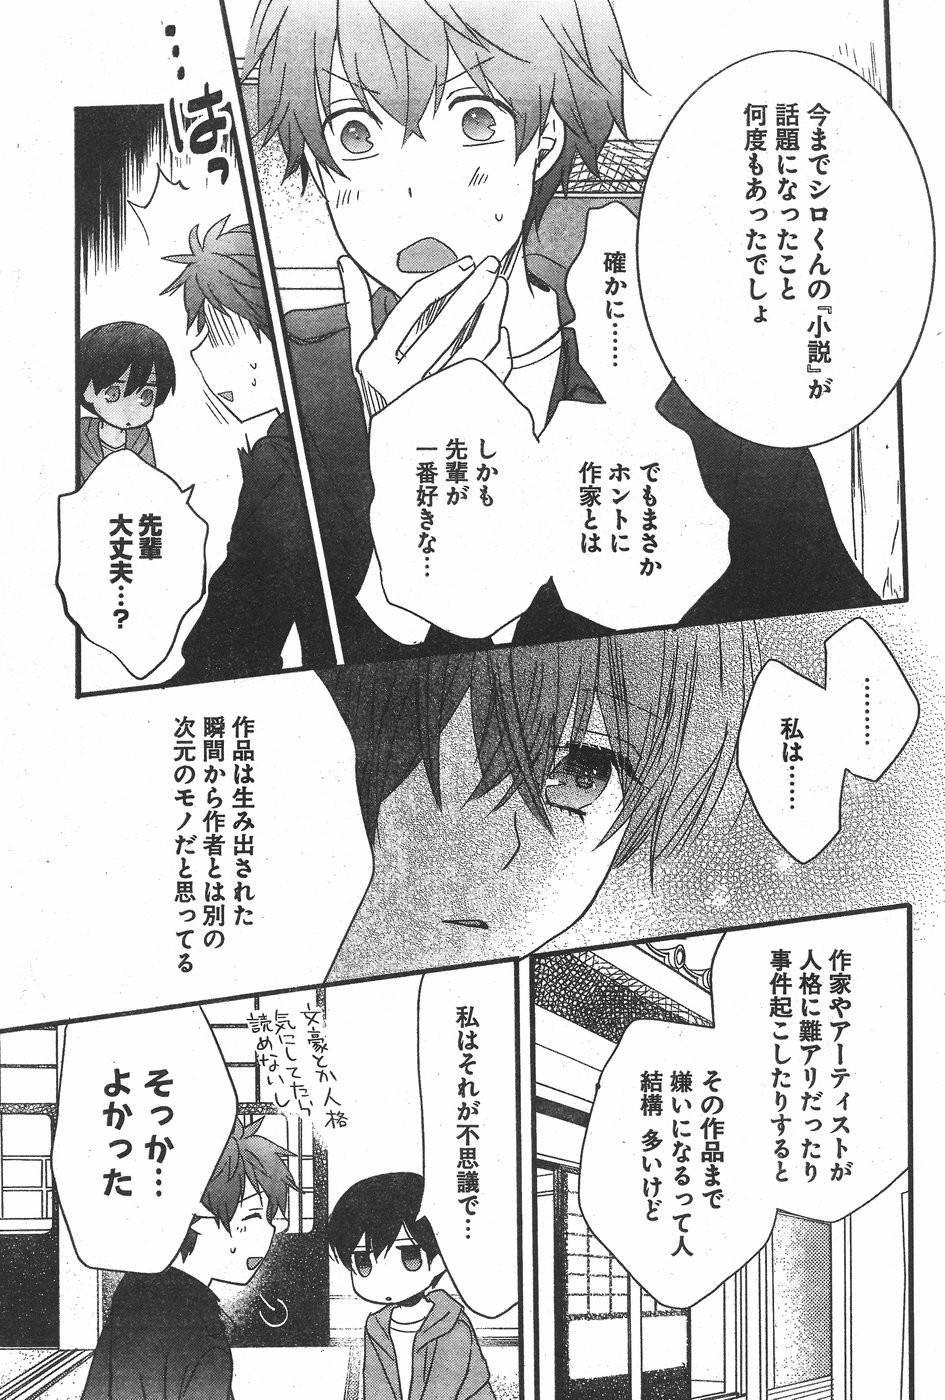 Bokura wa Minna Kawaisou - Chapter 82 - Page 19